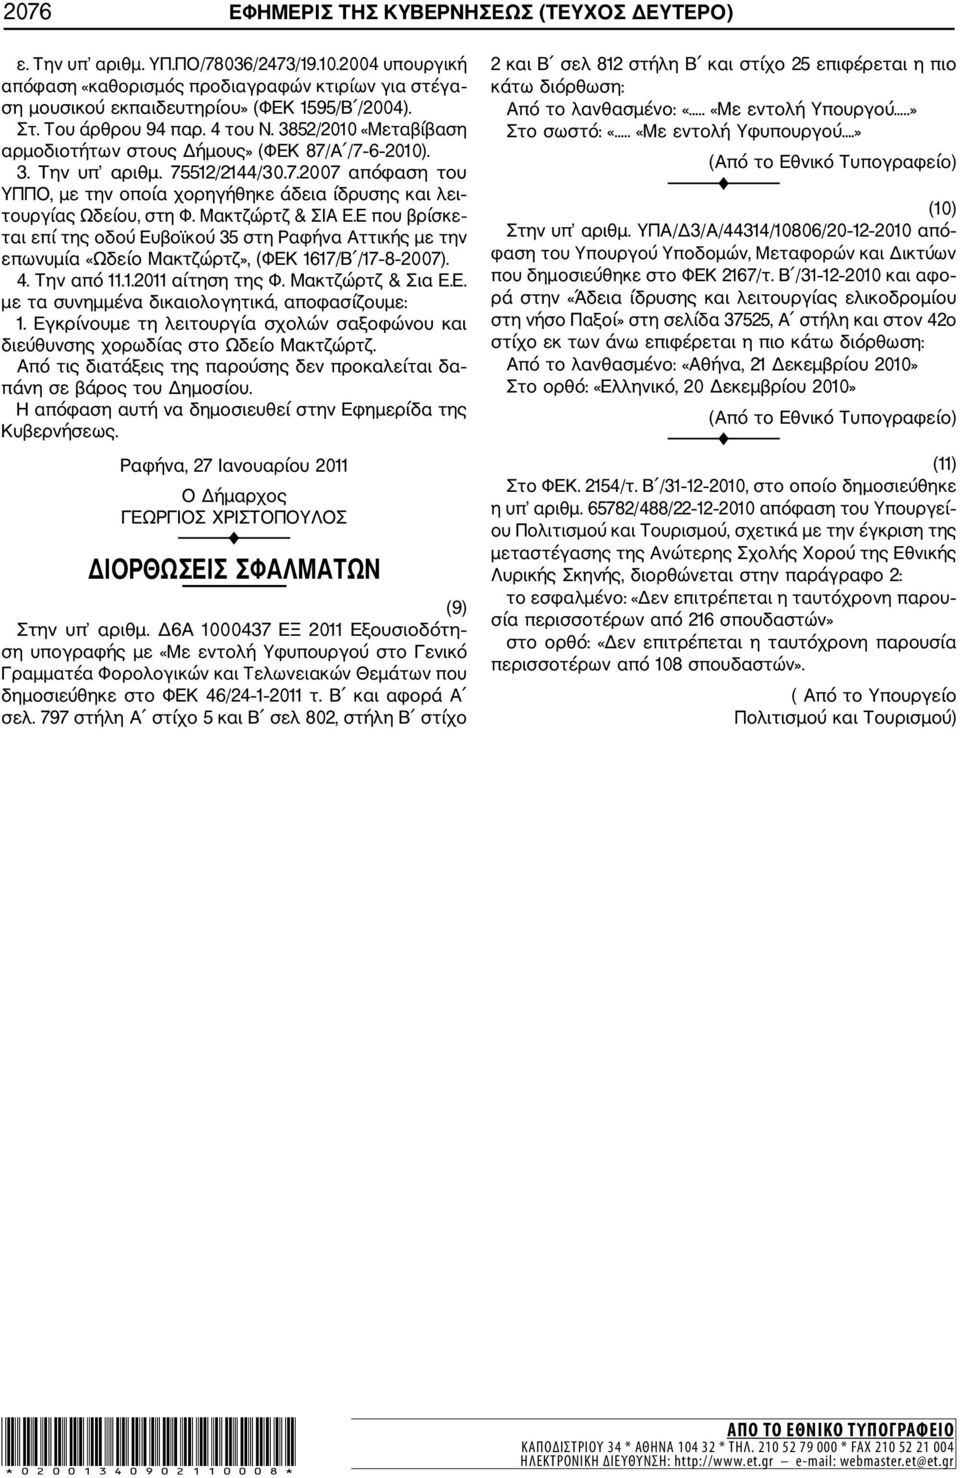 Μακτζώρτζ & ΣΙΑ Ε.Ε που βρίσκε ται επί της οδού Ευβοϊκού 35 στη Ραφήνα Αττικής με την επωνυμία «Ωδείο Μακτζώρτζ», (ΦΕΚ 67/Β /7 8 2007). 4. Την από..20 αίτηση της Φ. Μακτζώρτζ & Σια Ε.Ε. με τα συνημμένα δικαιολογητικά, αποφασίζουμε:.